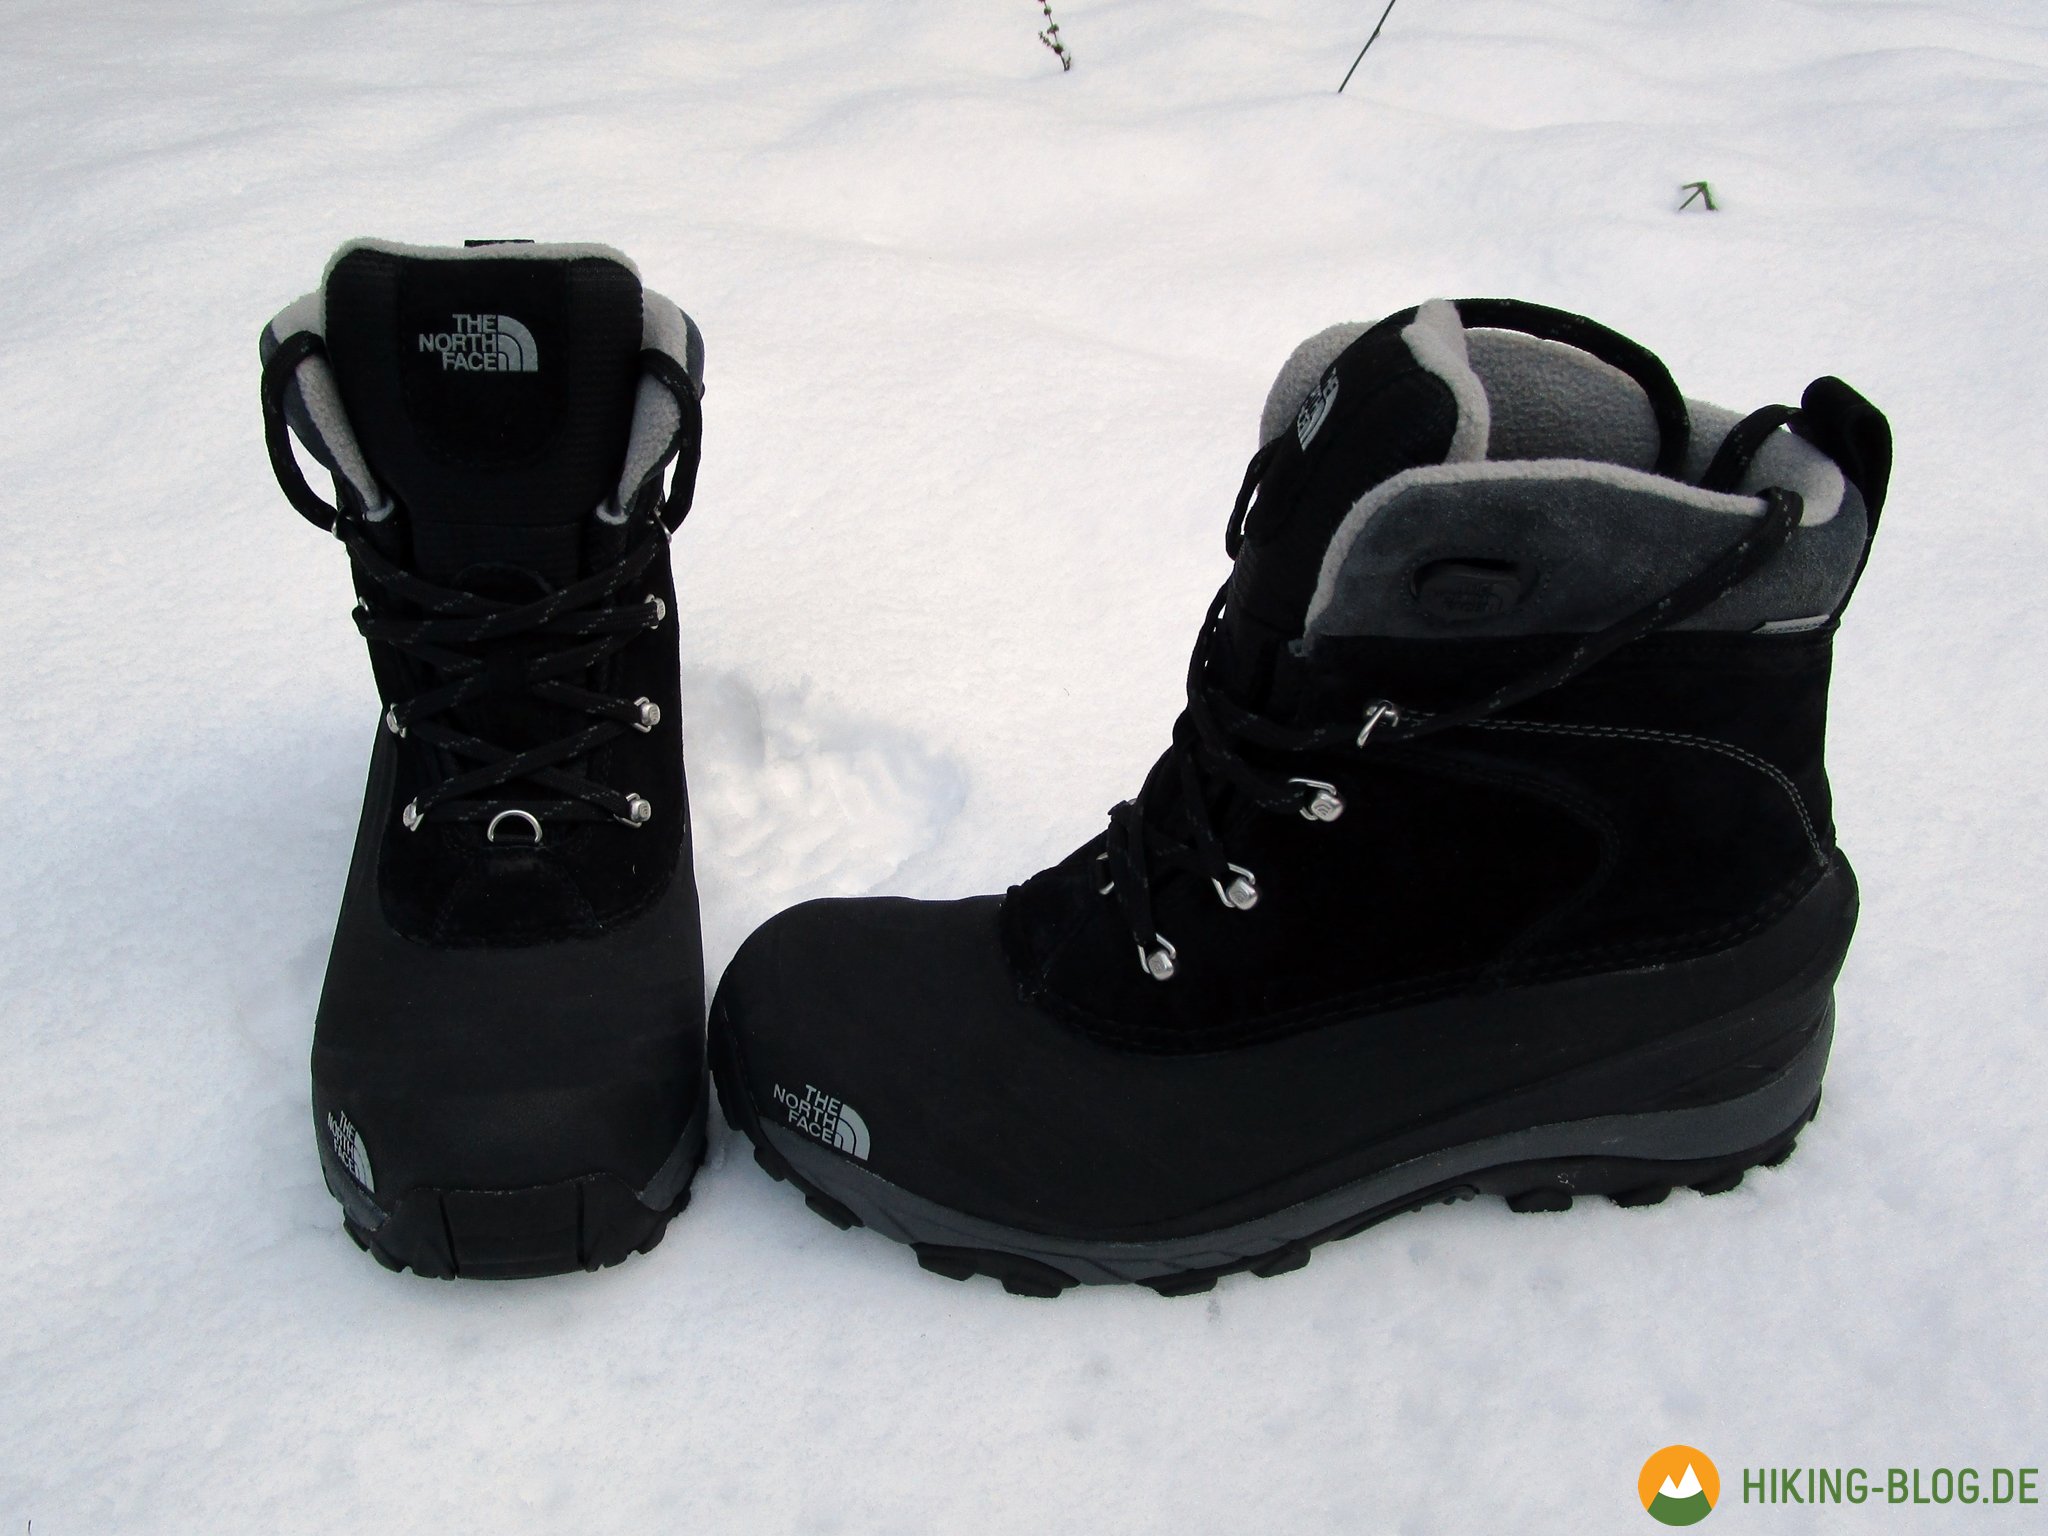 Boom Doe een poging Kliniek Praxistest: The North Face Chilkat II Winterstiefel - Hiking Blog